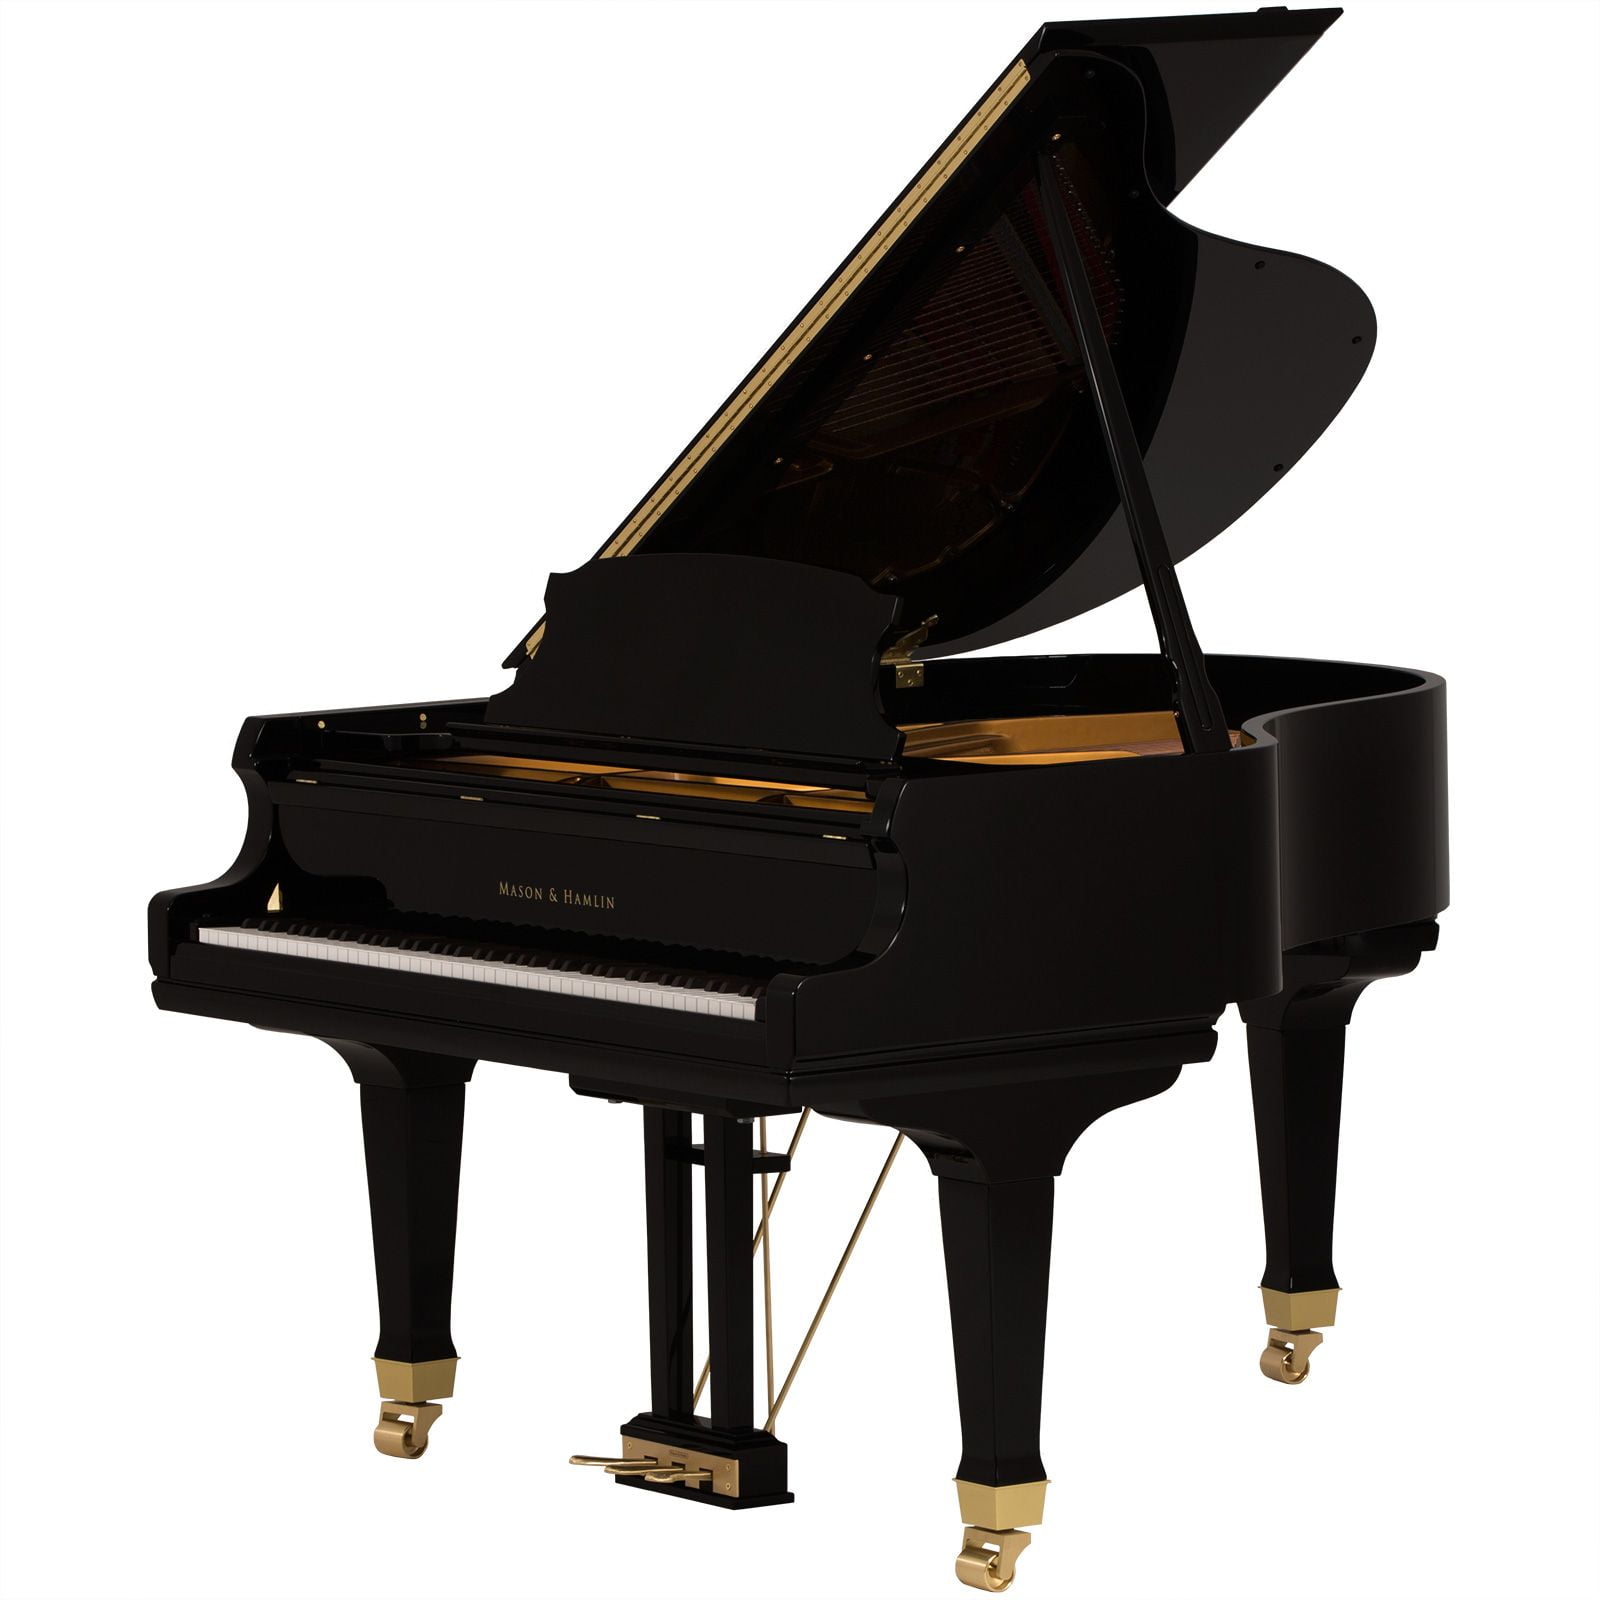 A 58 Ebony Polish opt • Mason & Hamlin Piano Company • Made in the USA